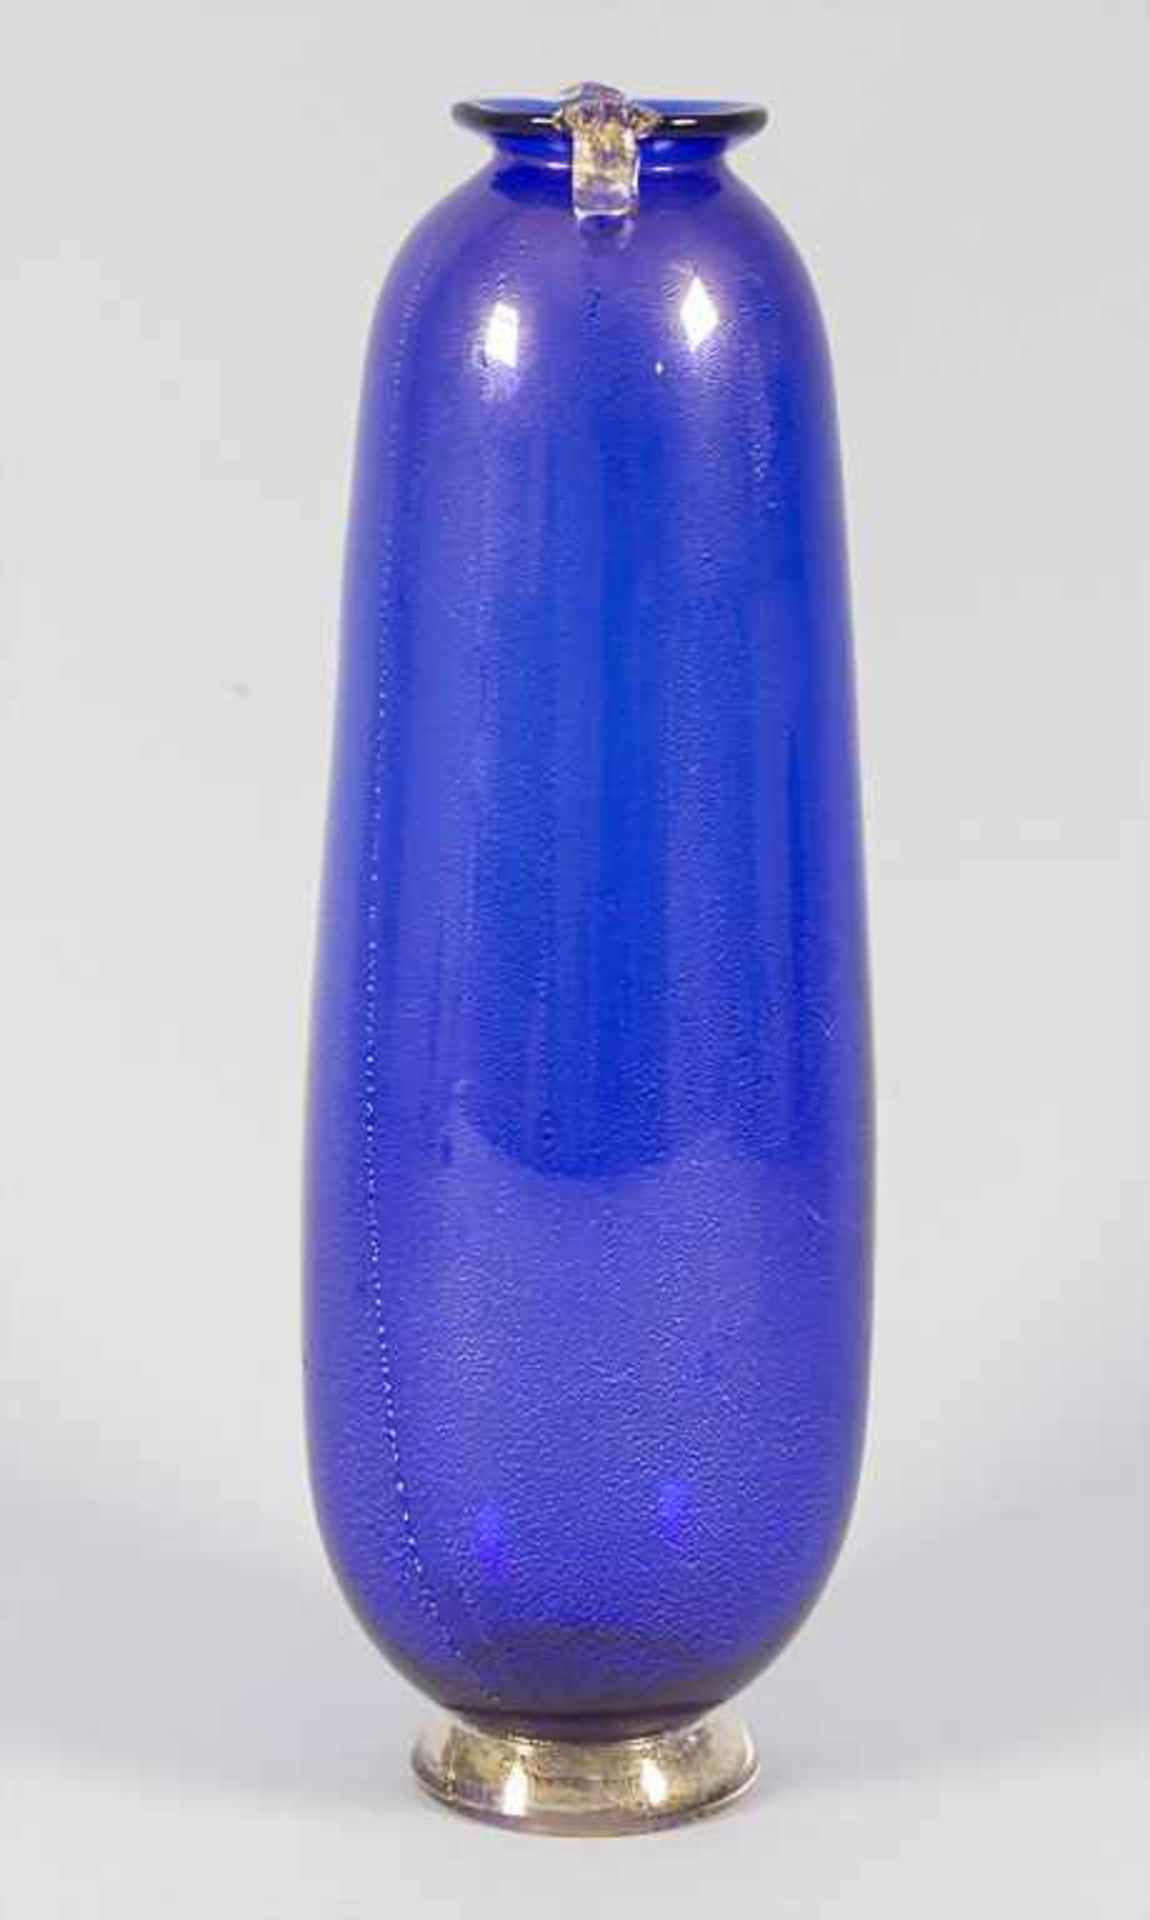 Glasziervase / A decorative glass vase, wohl AVEM (Arte Vetraria Muranese), Murano, 40/50er Jahre, - Bild 4 aus 6